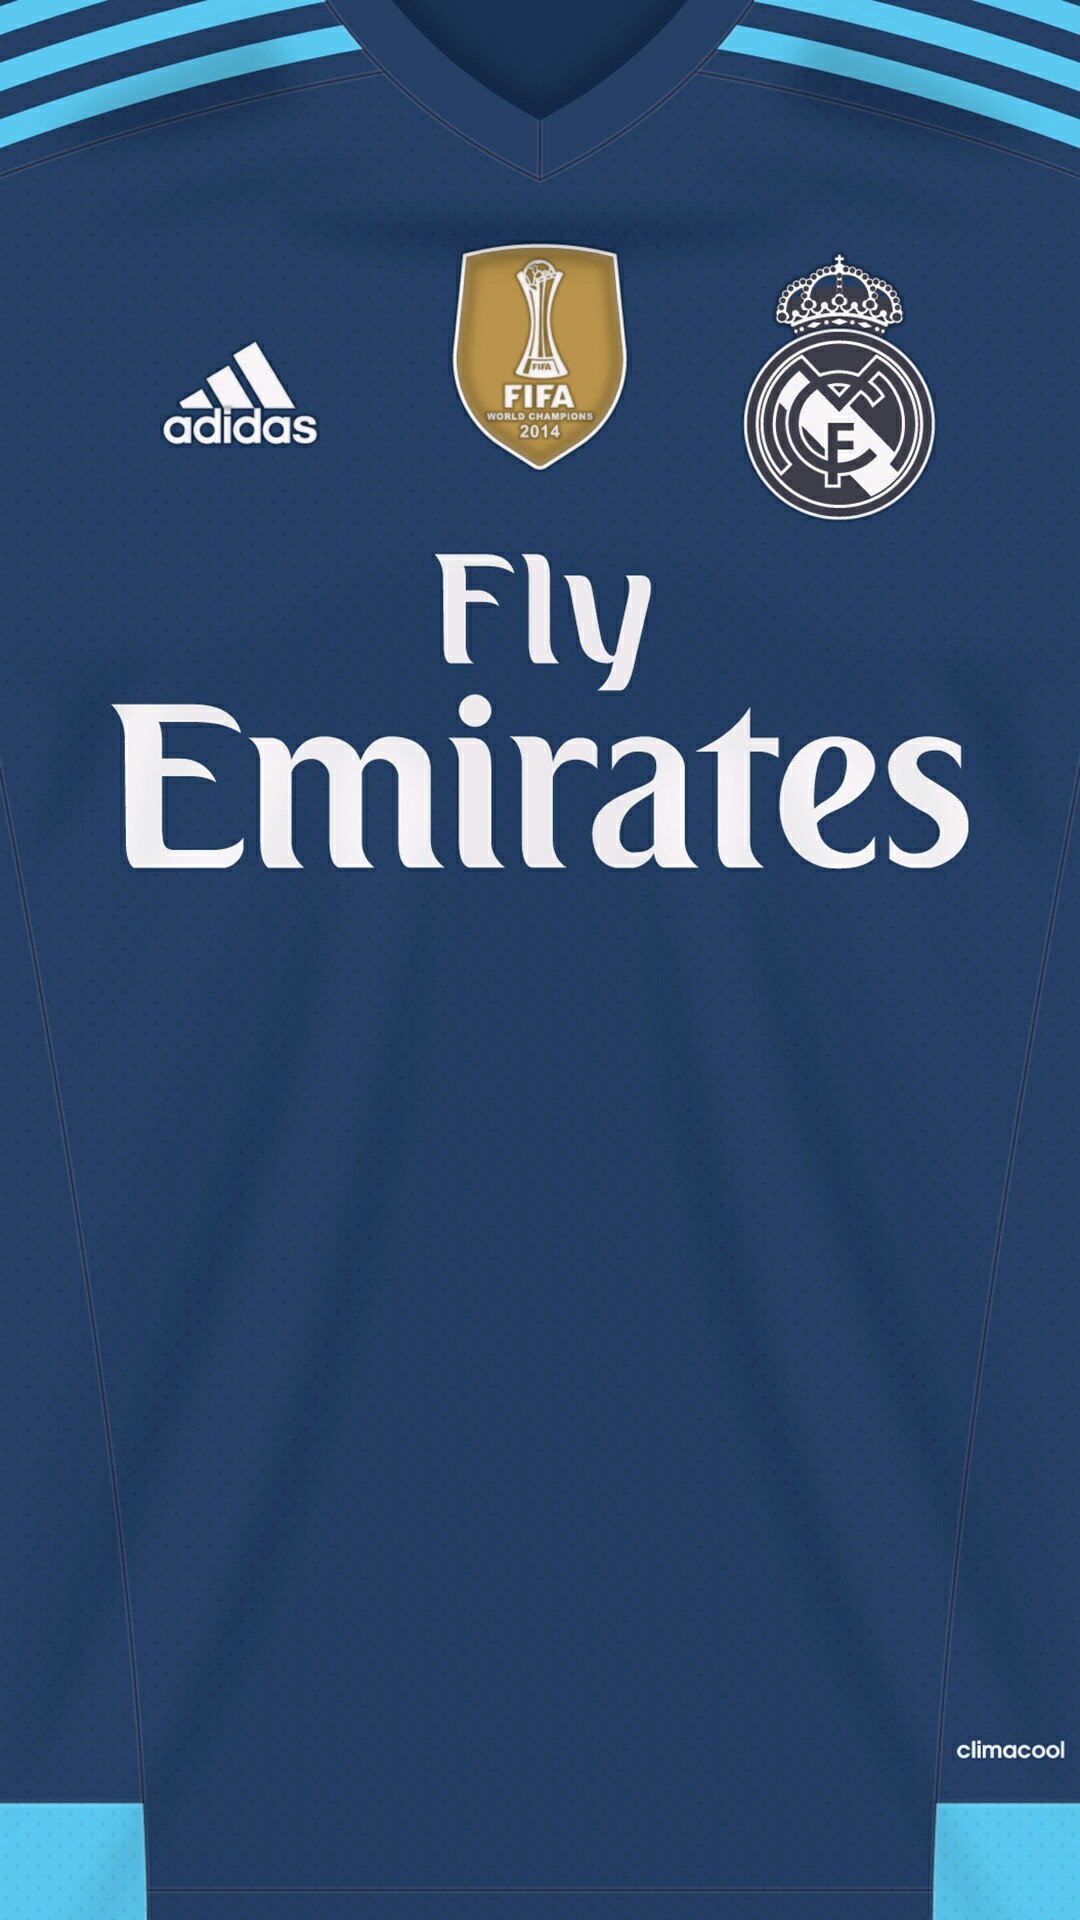 Soccer Kits, Football Kits, Football Wallpaper, Real Madrid Wallpapers, Champions League, Messi, Ronaldo, Adidas, Android